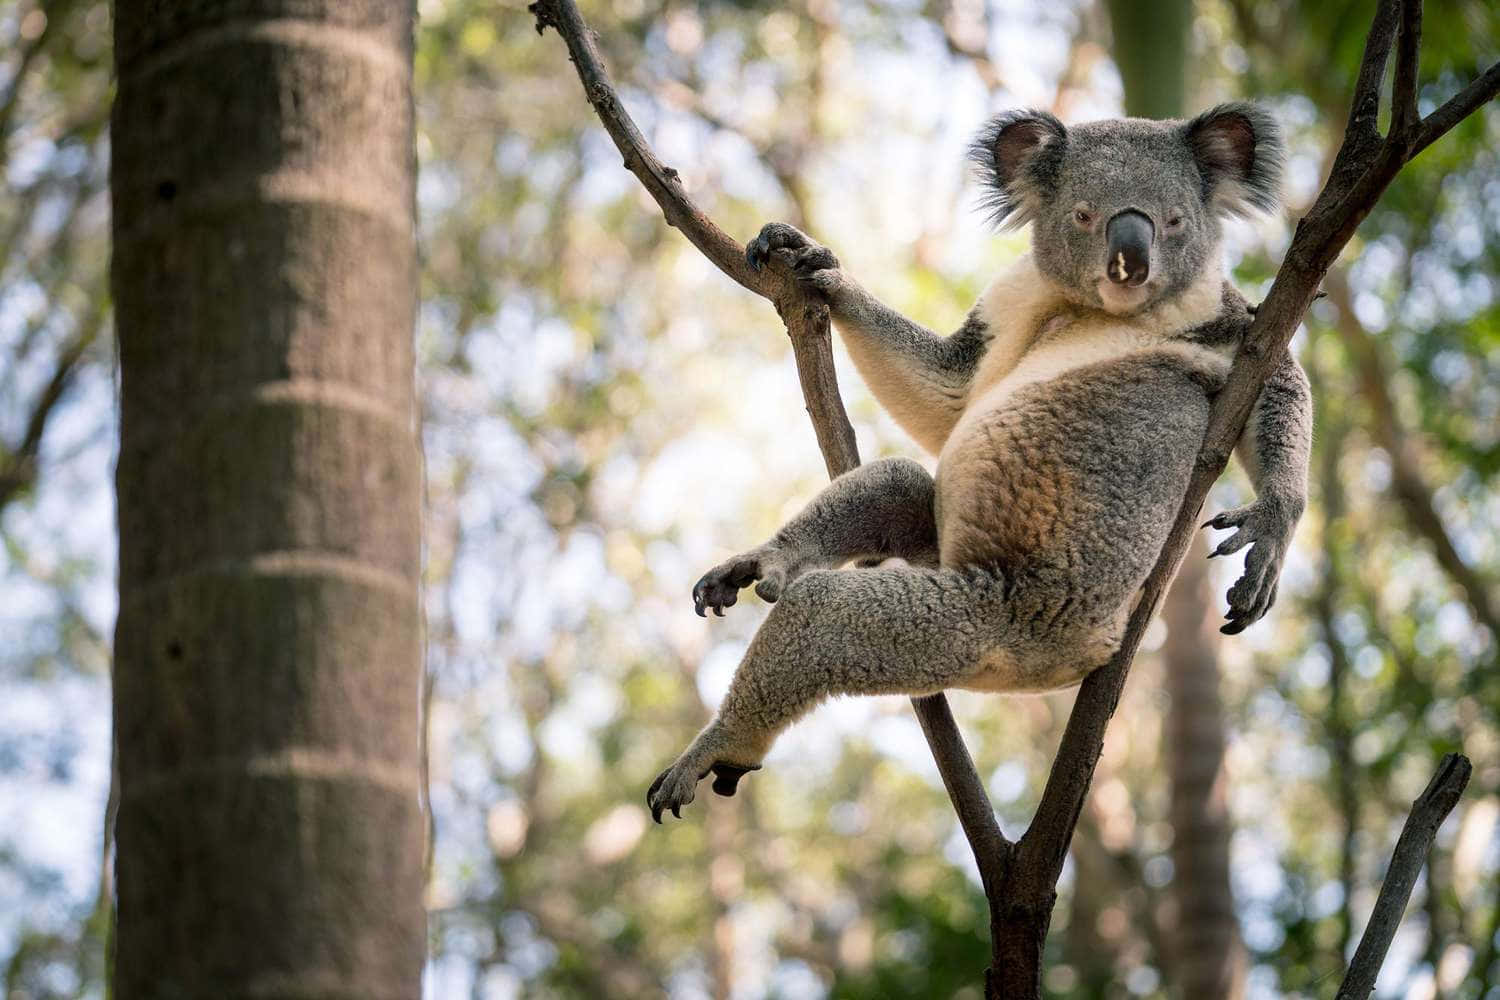 A smiling Koala eating a Eucalyptus leaf.